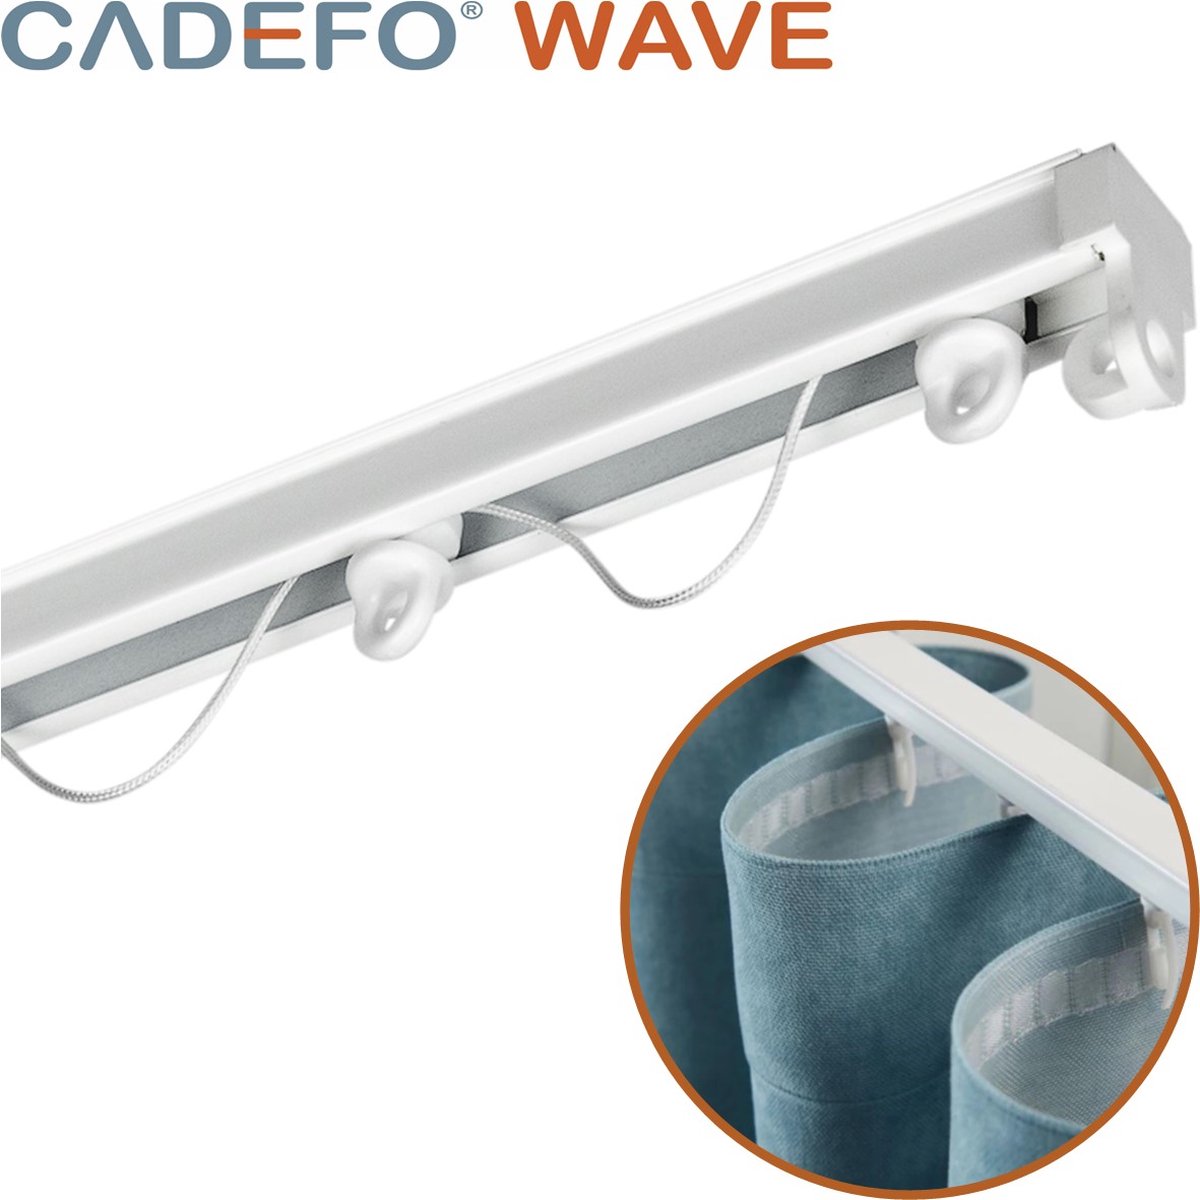 CADEFO WAVE (251 - 300 cm) Gordijnrails - Compleet op maat! - UIT 1 STUK - Leverbaar tot 6 meter - Plafondbevestiging - Lengte 256 cm